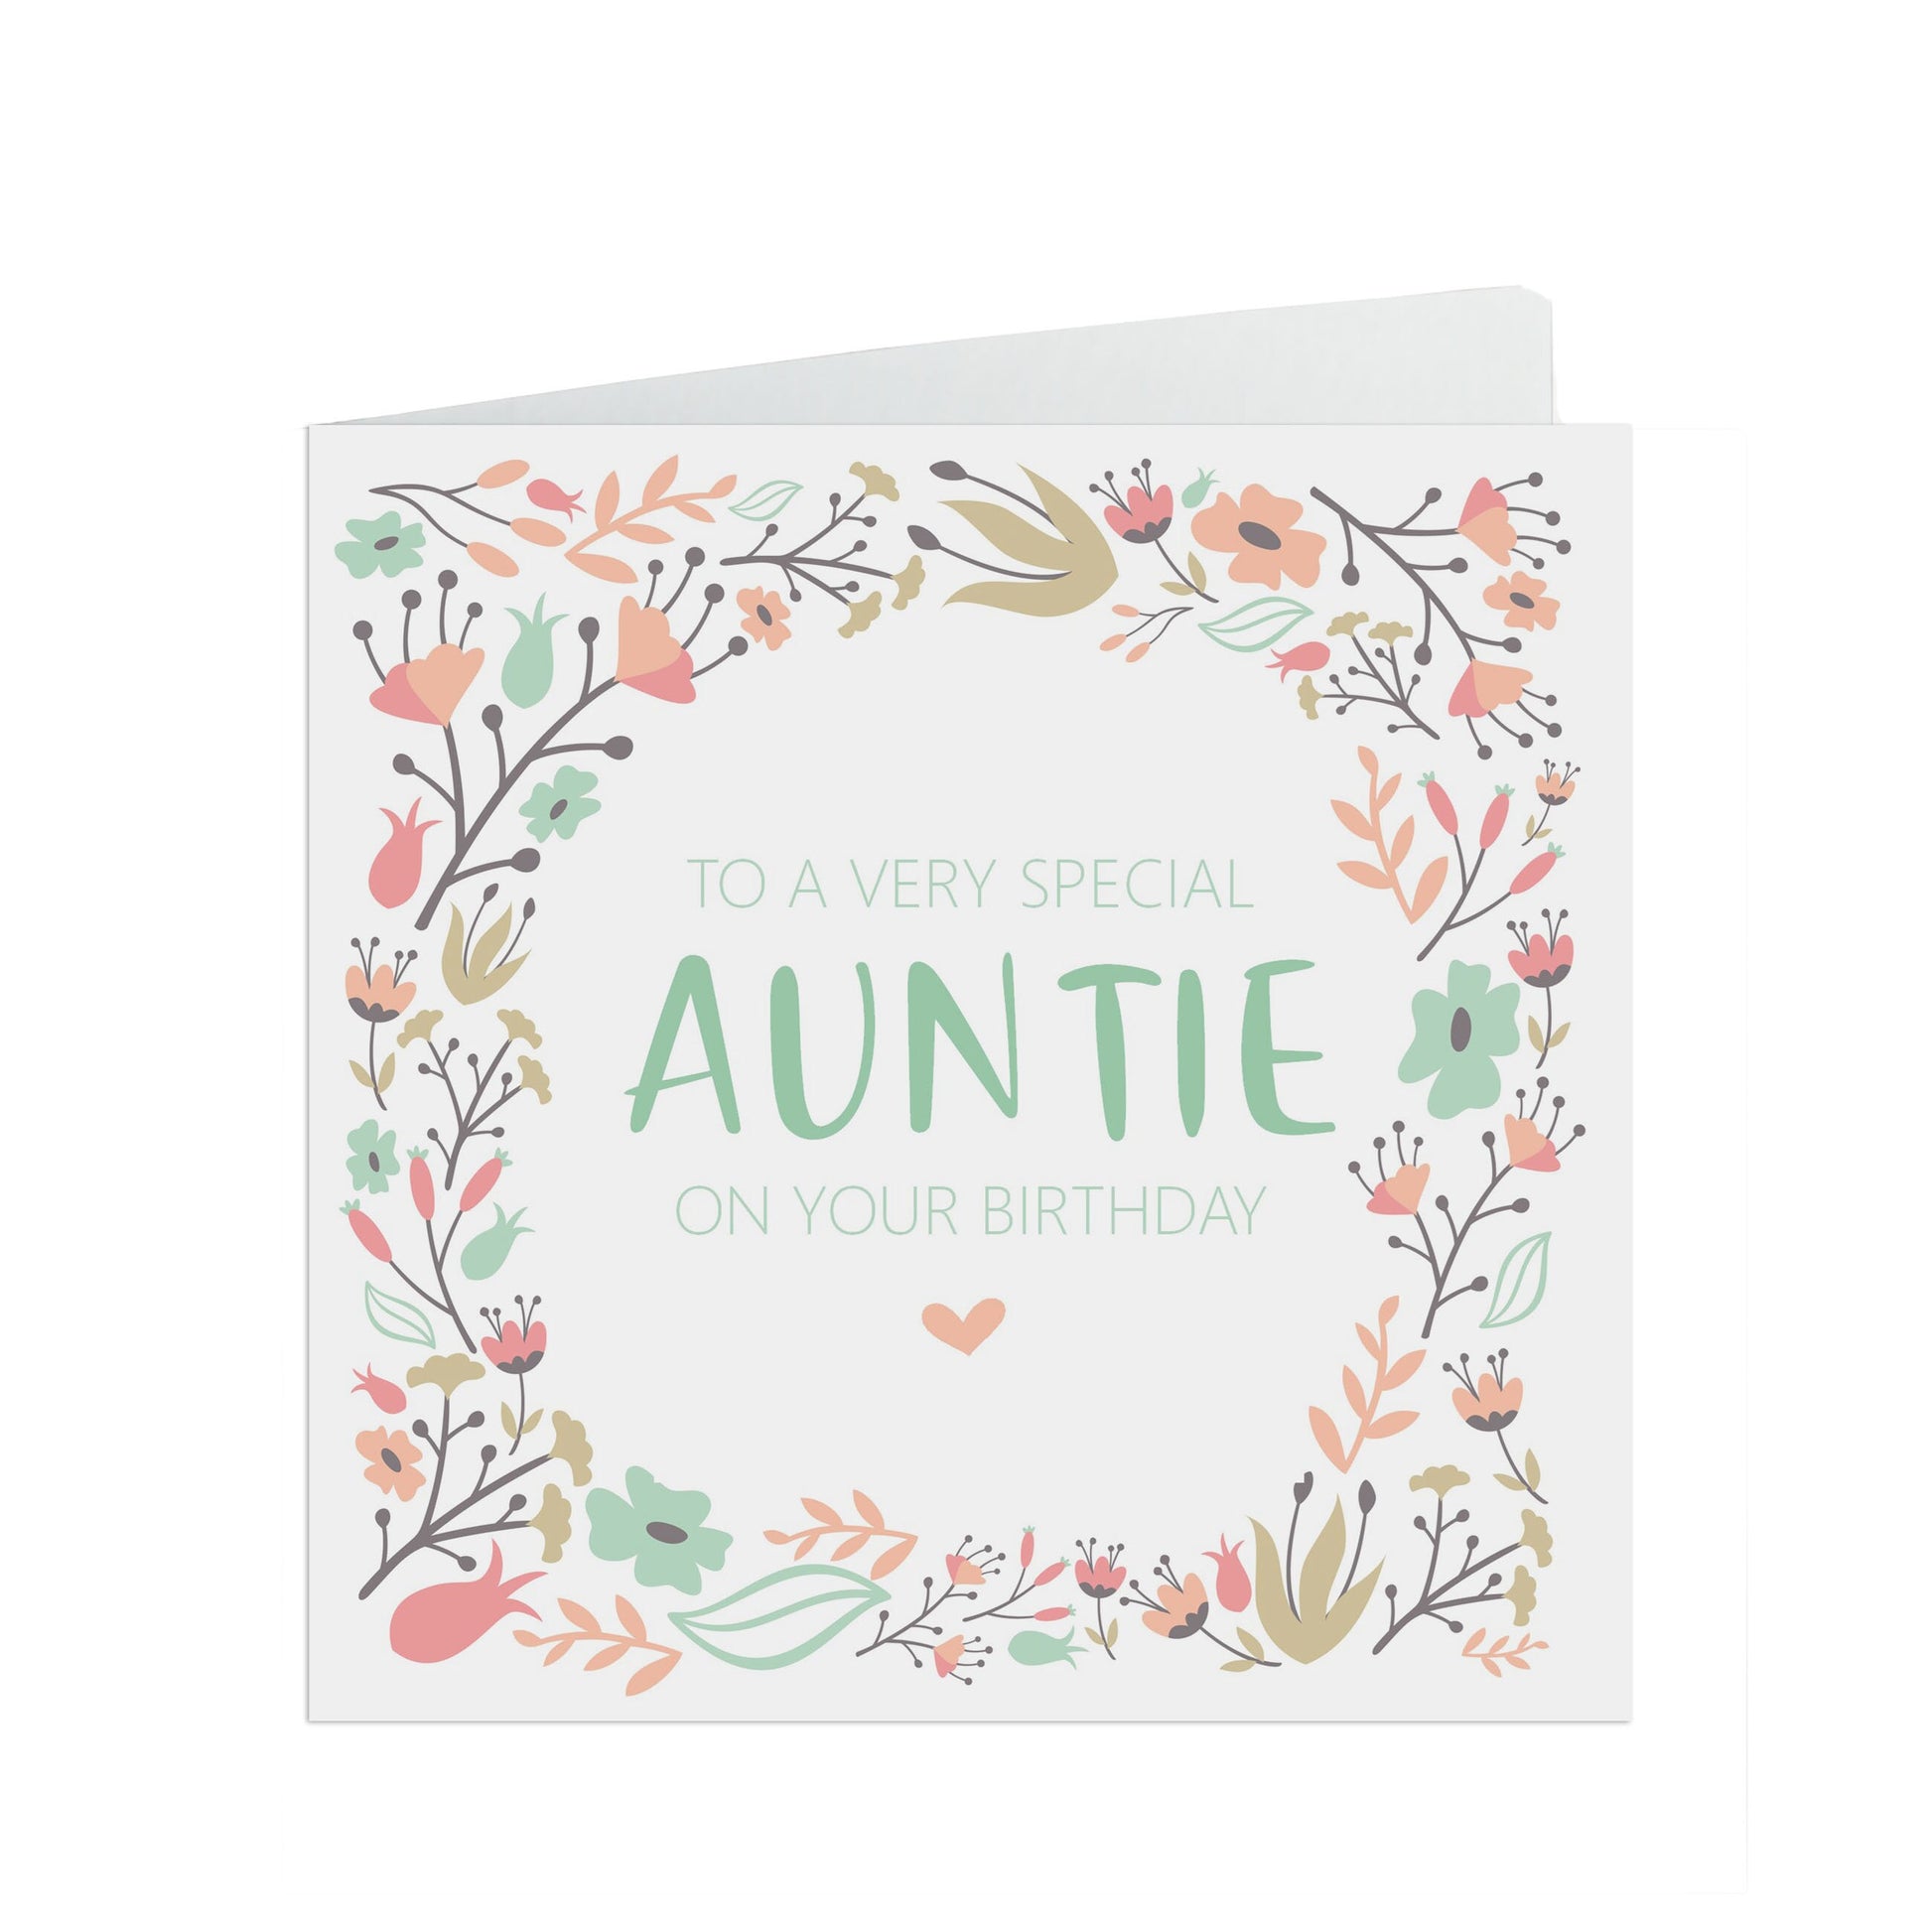 Auntie Birthday Card, Sage & Peach Flower Design